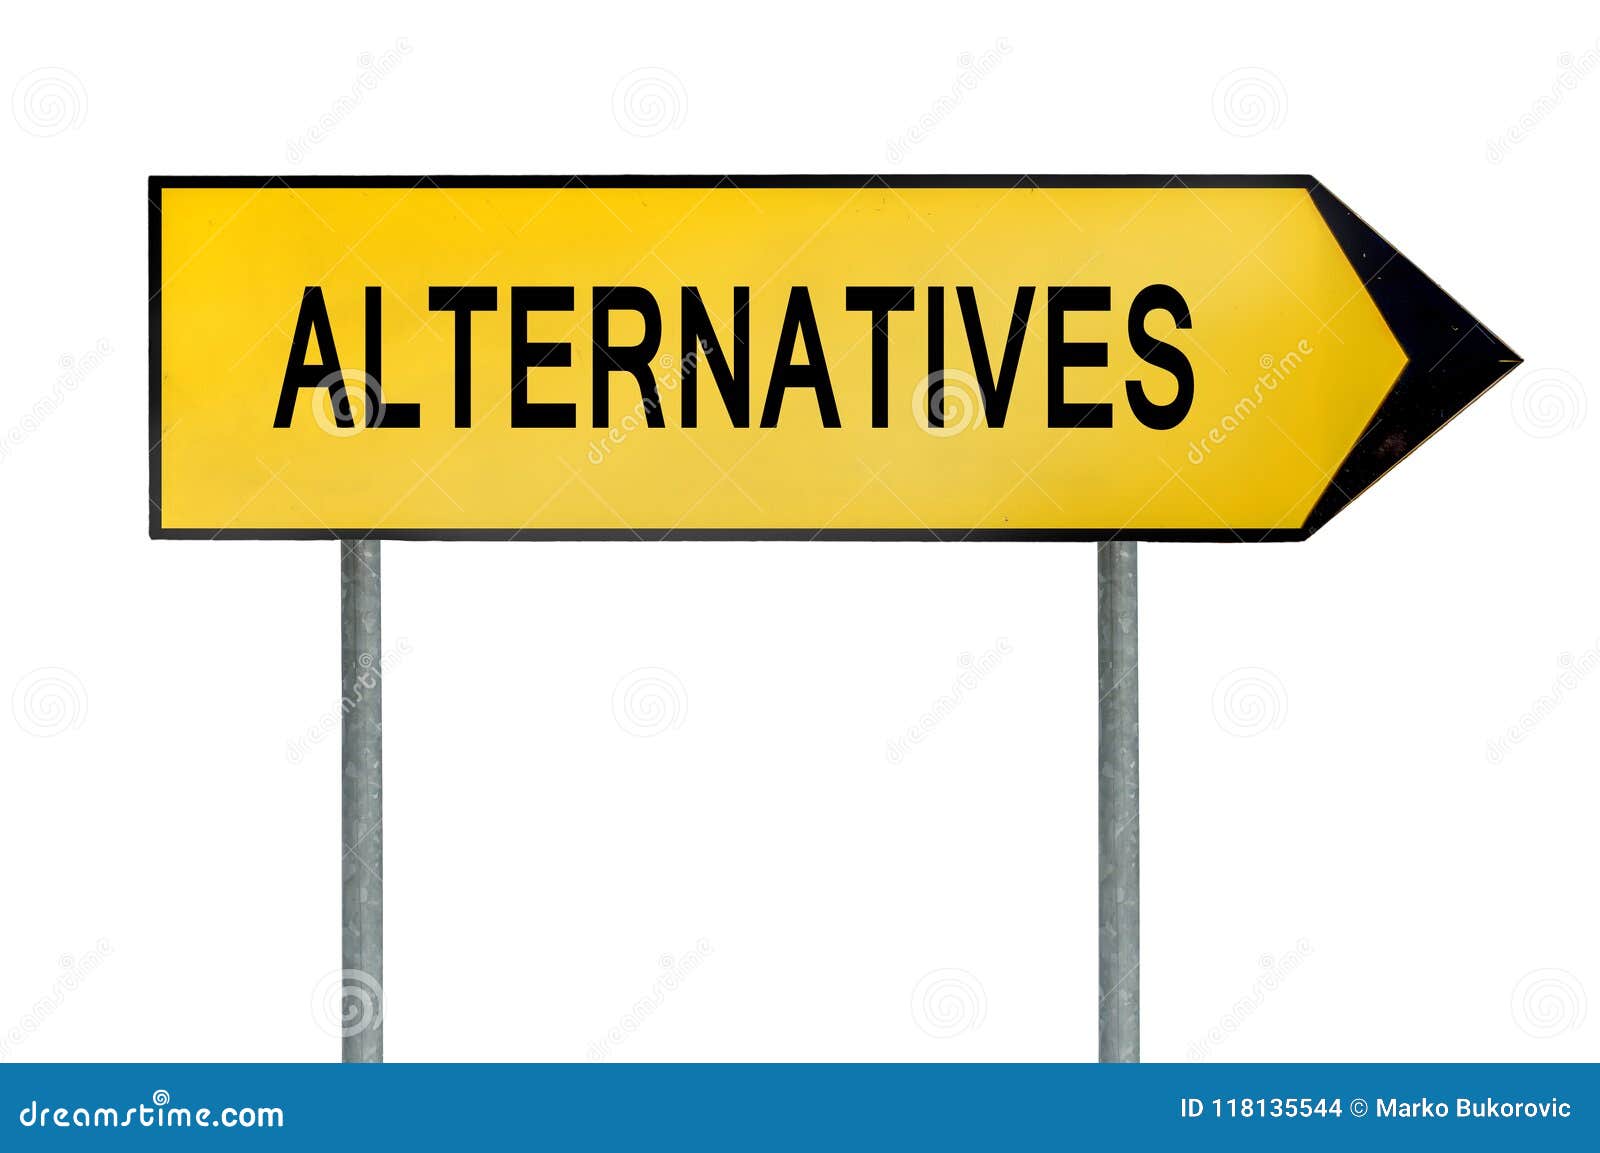 alterNatives